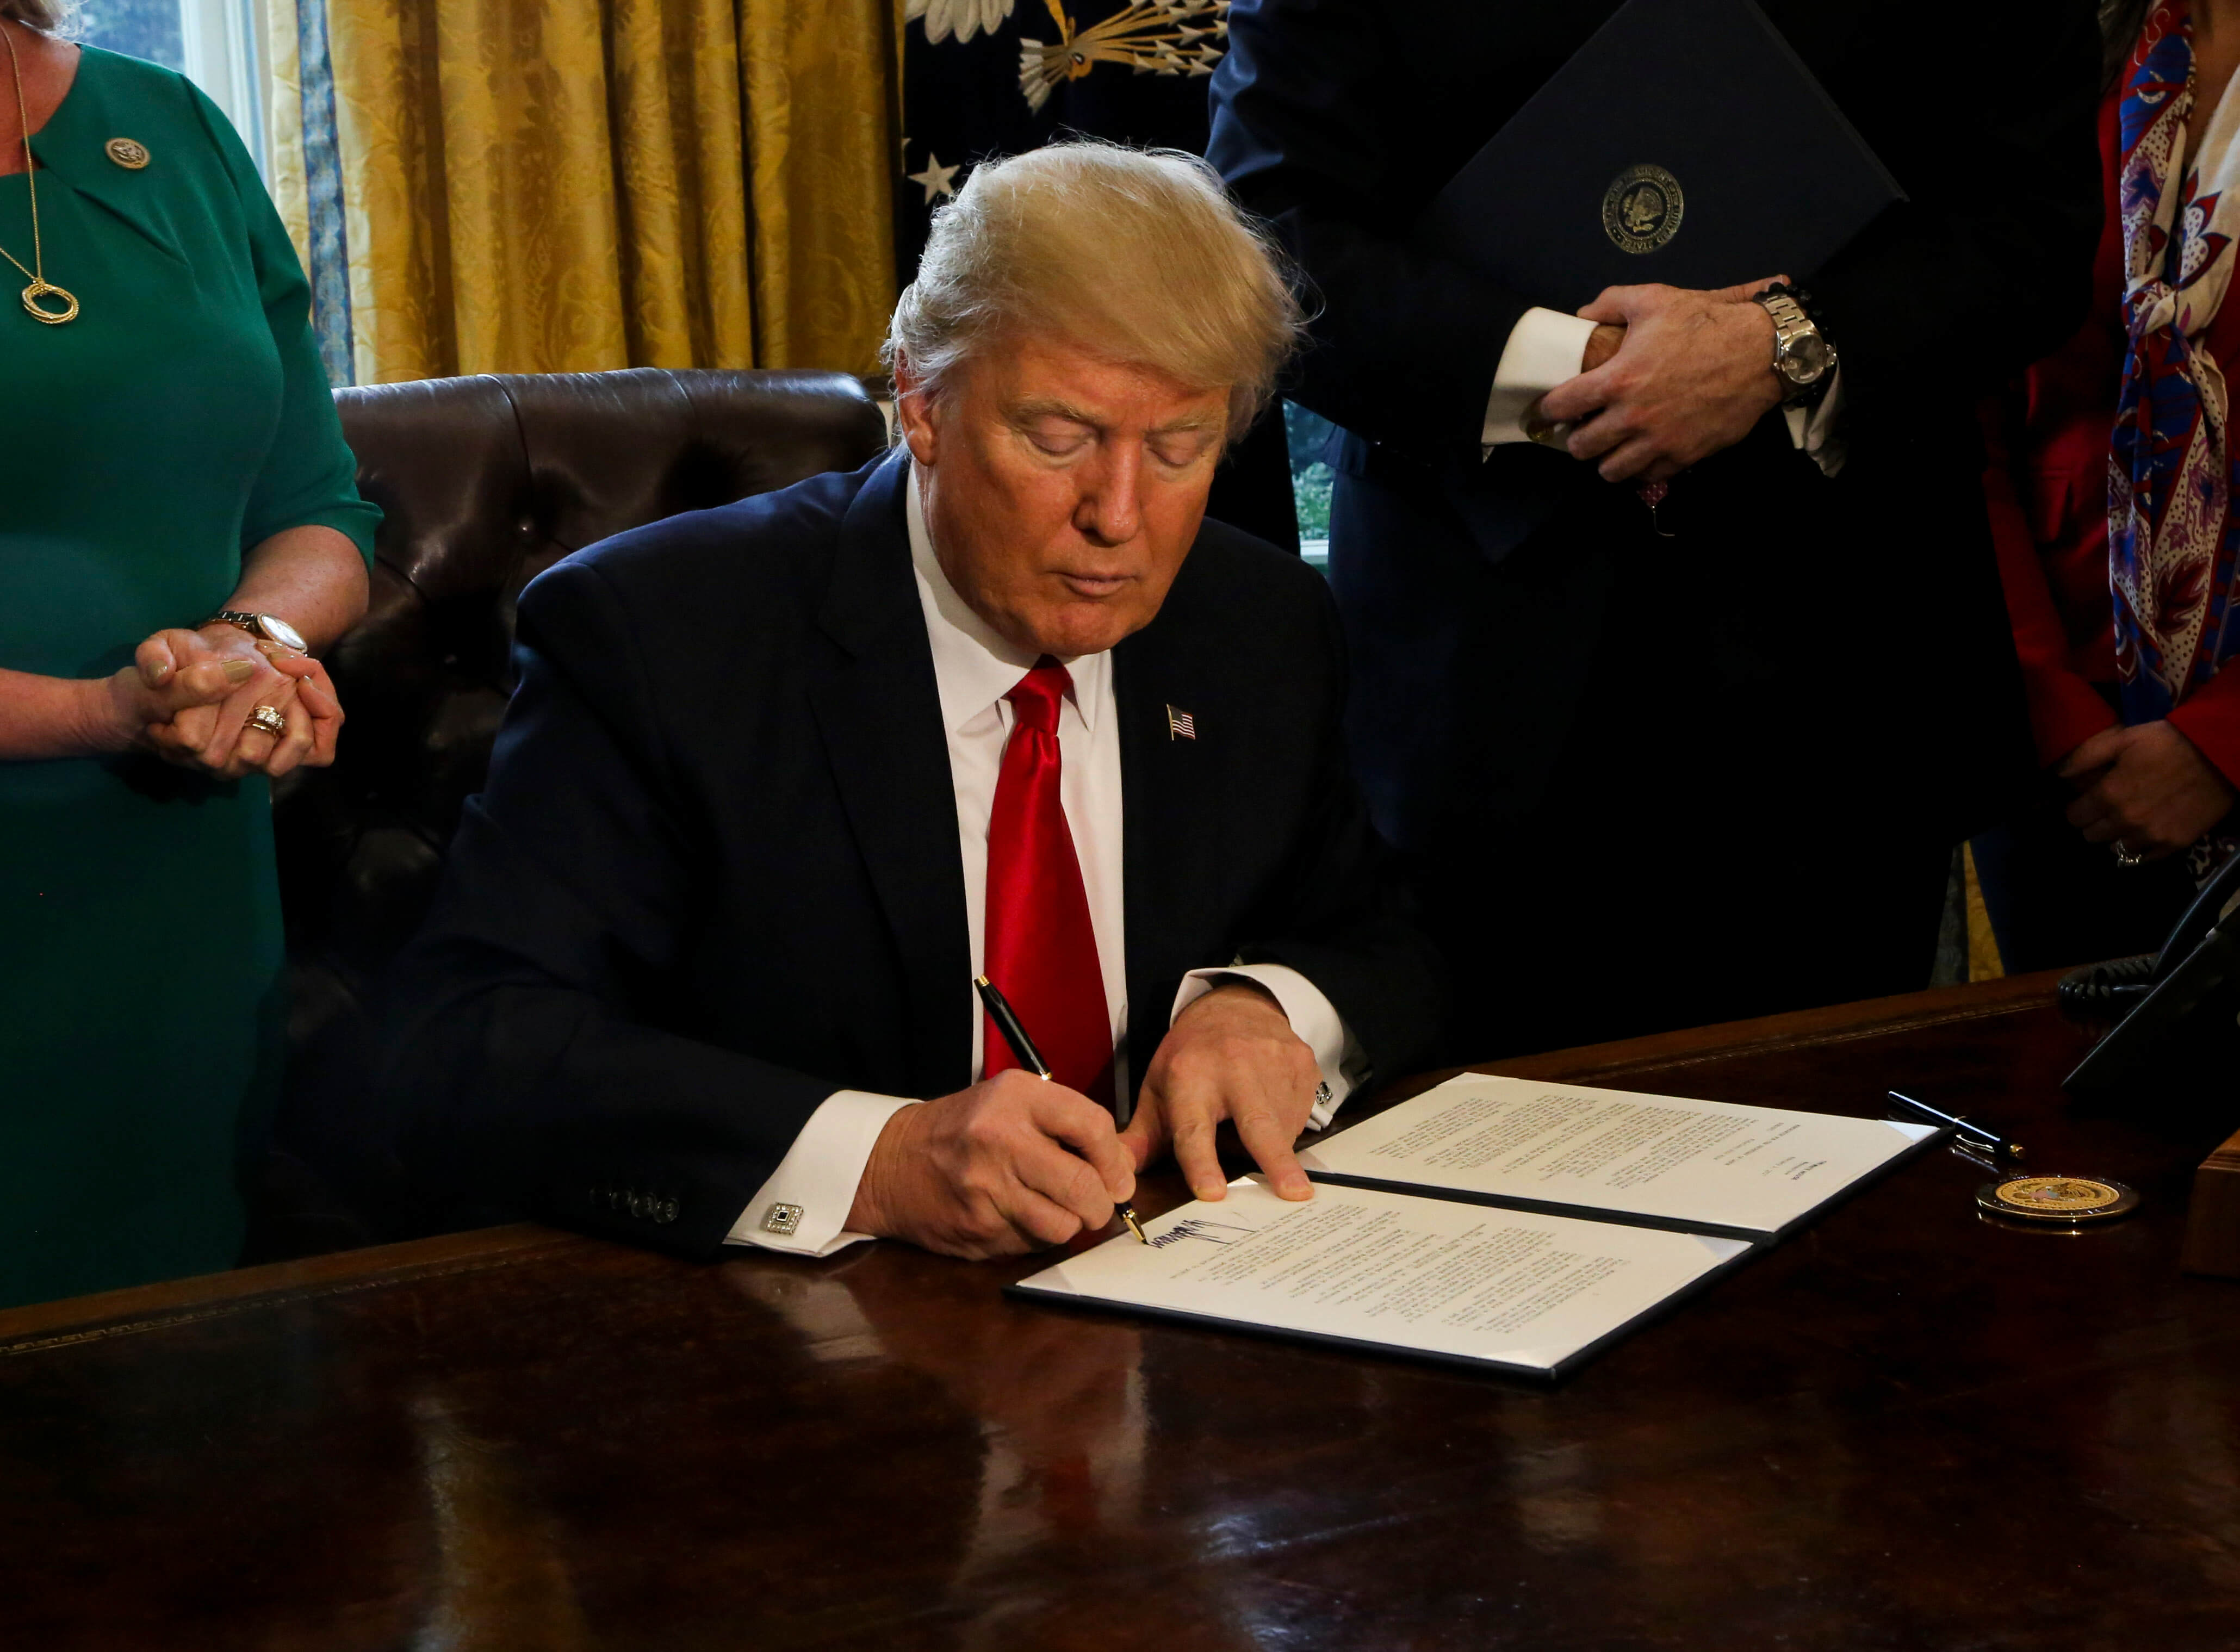 El presidente Donald Trump firmó una orden ejecutiva que vetaba la entrada a Estados Unidos a los inmigrantes procedentes de Irak, Yemen, Irán, Somalia, Sudán, Siria y Libia, además de los refugiados sirios. (Getty images/archivo)